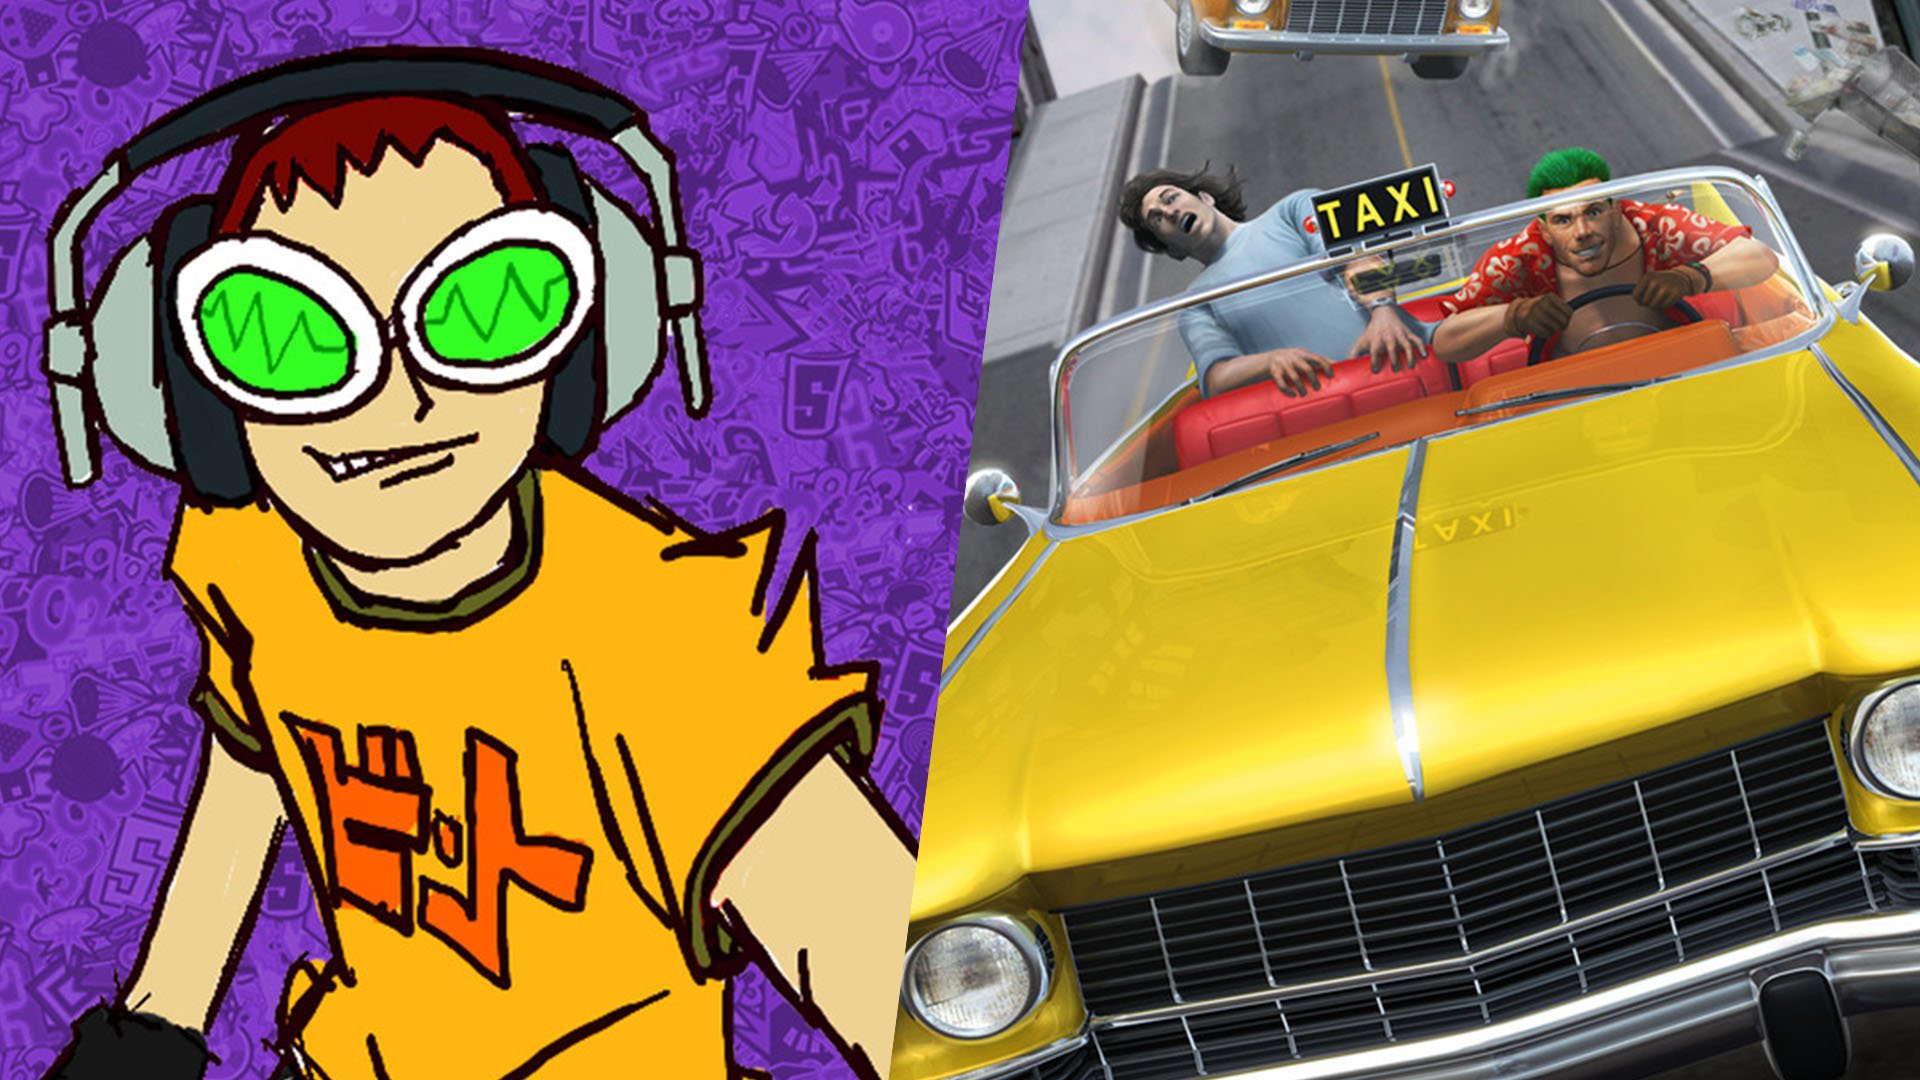 Sega announces reboots of five classic games including Crazy Taxi